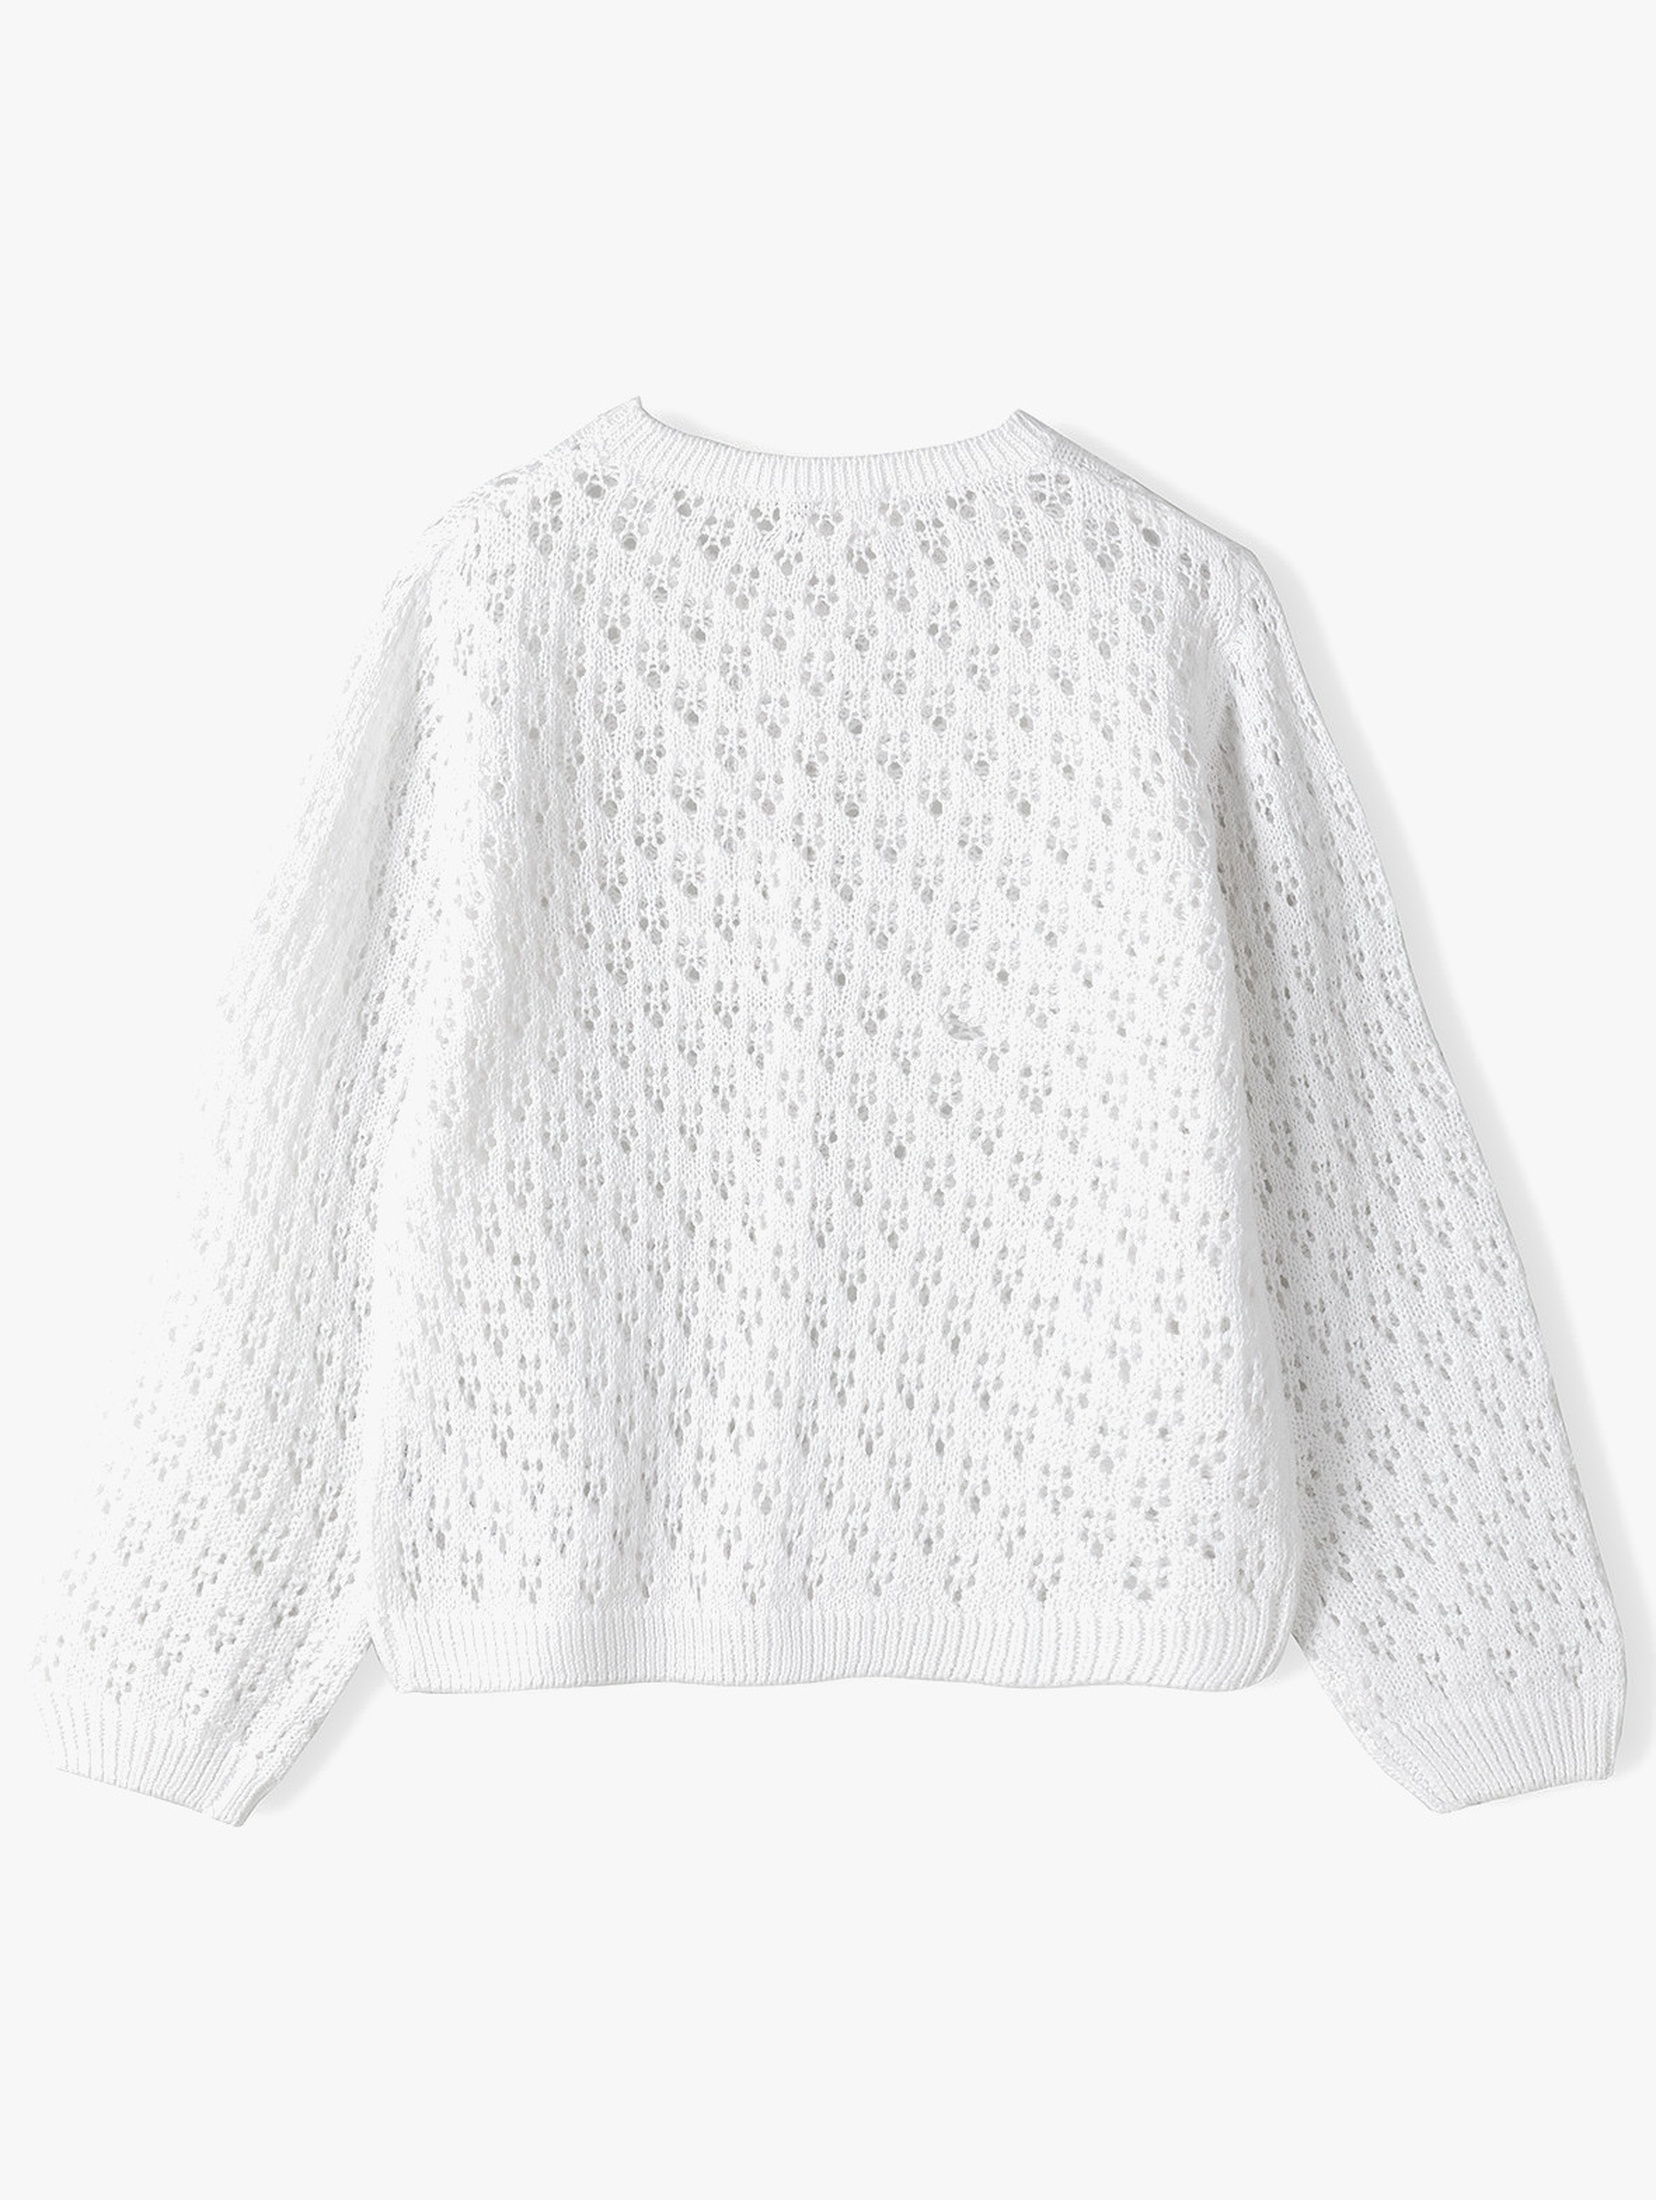 Biały ażurowy sweter dla dziewczynki - Max&Mia